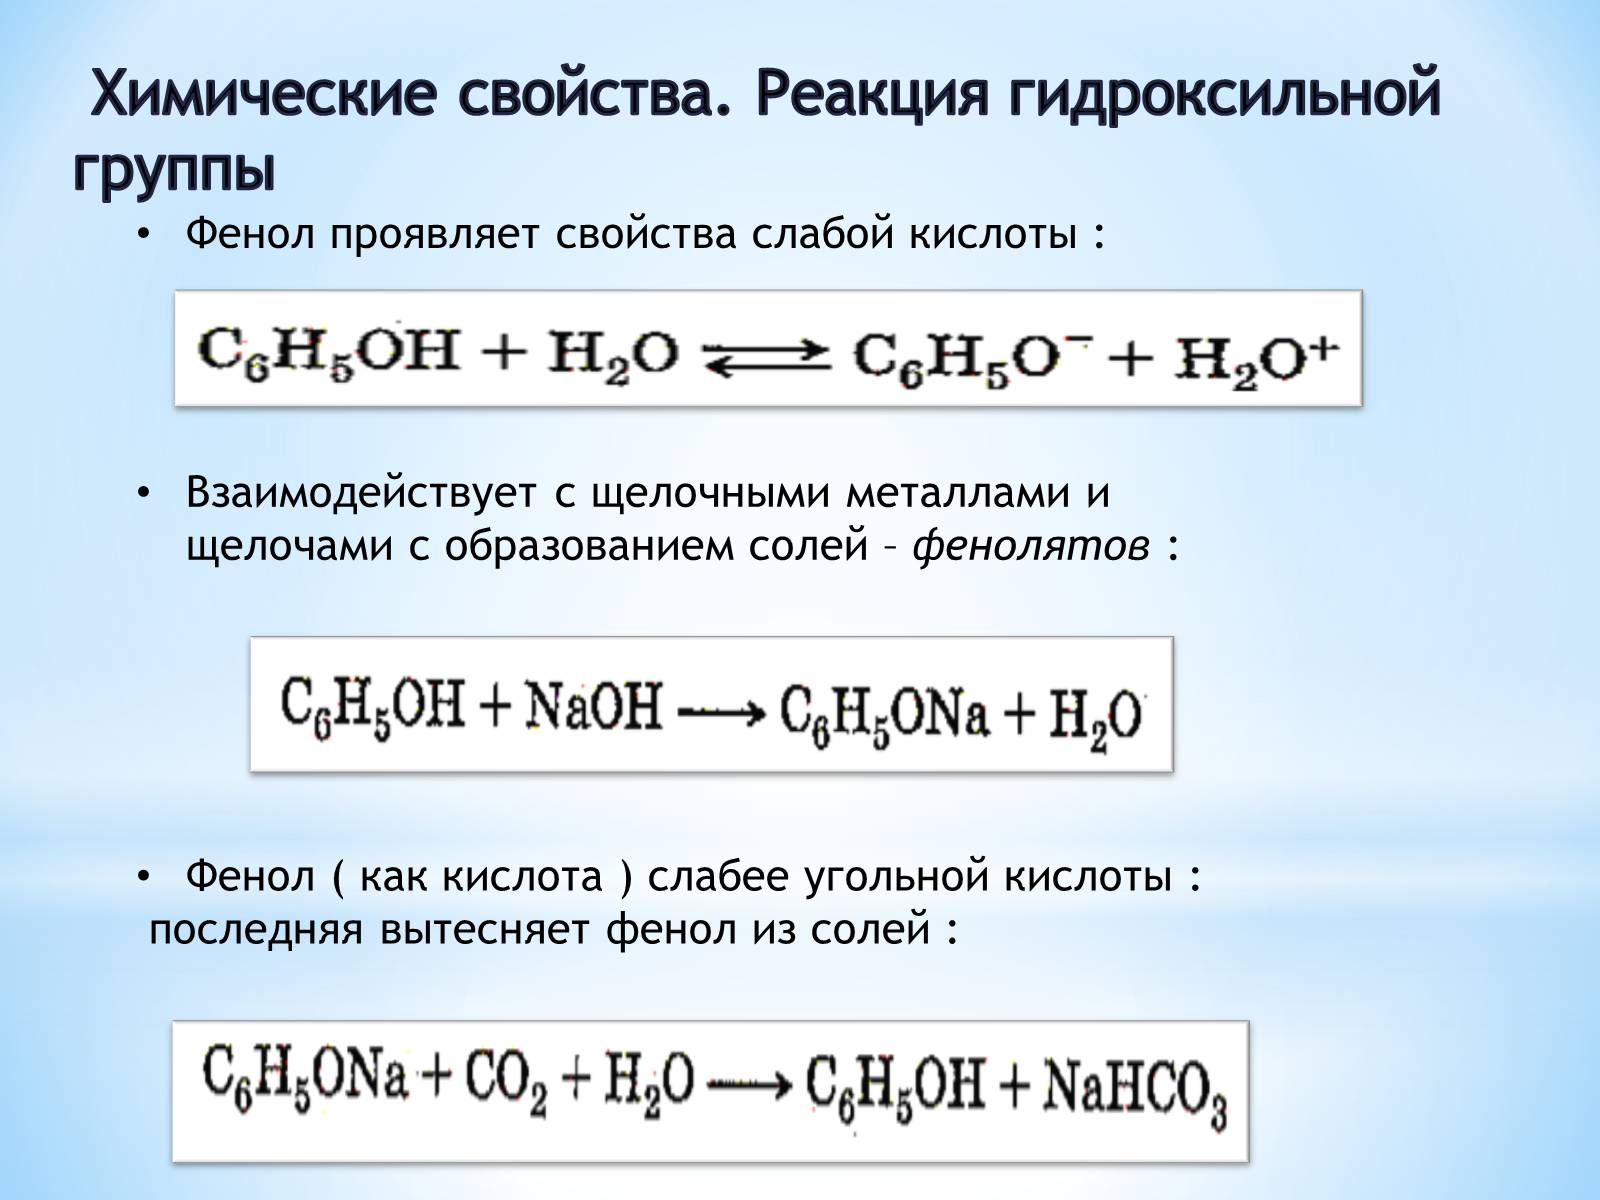 Реакции на гидроксильную группу. Фенол химические свойства реакции. Химические свойства фенола. Химические реакции фенолов. Фенол слабая кислота.